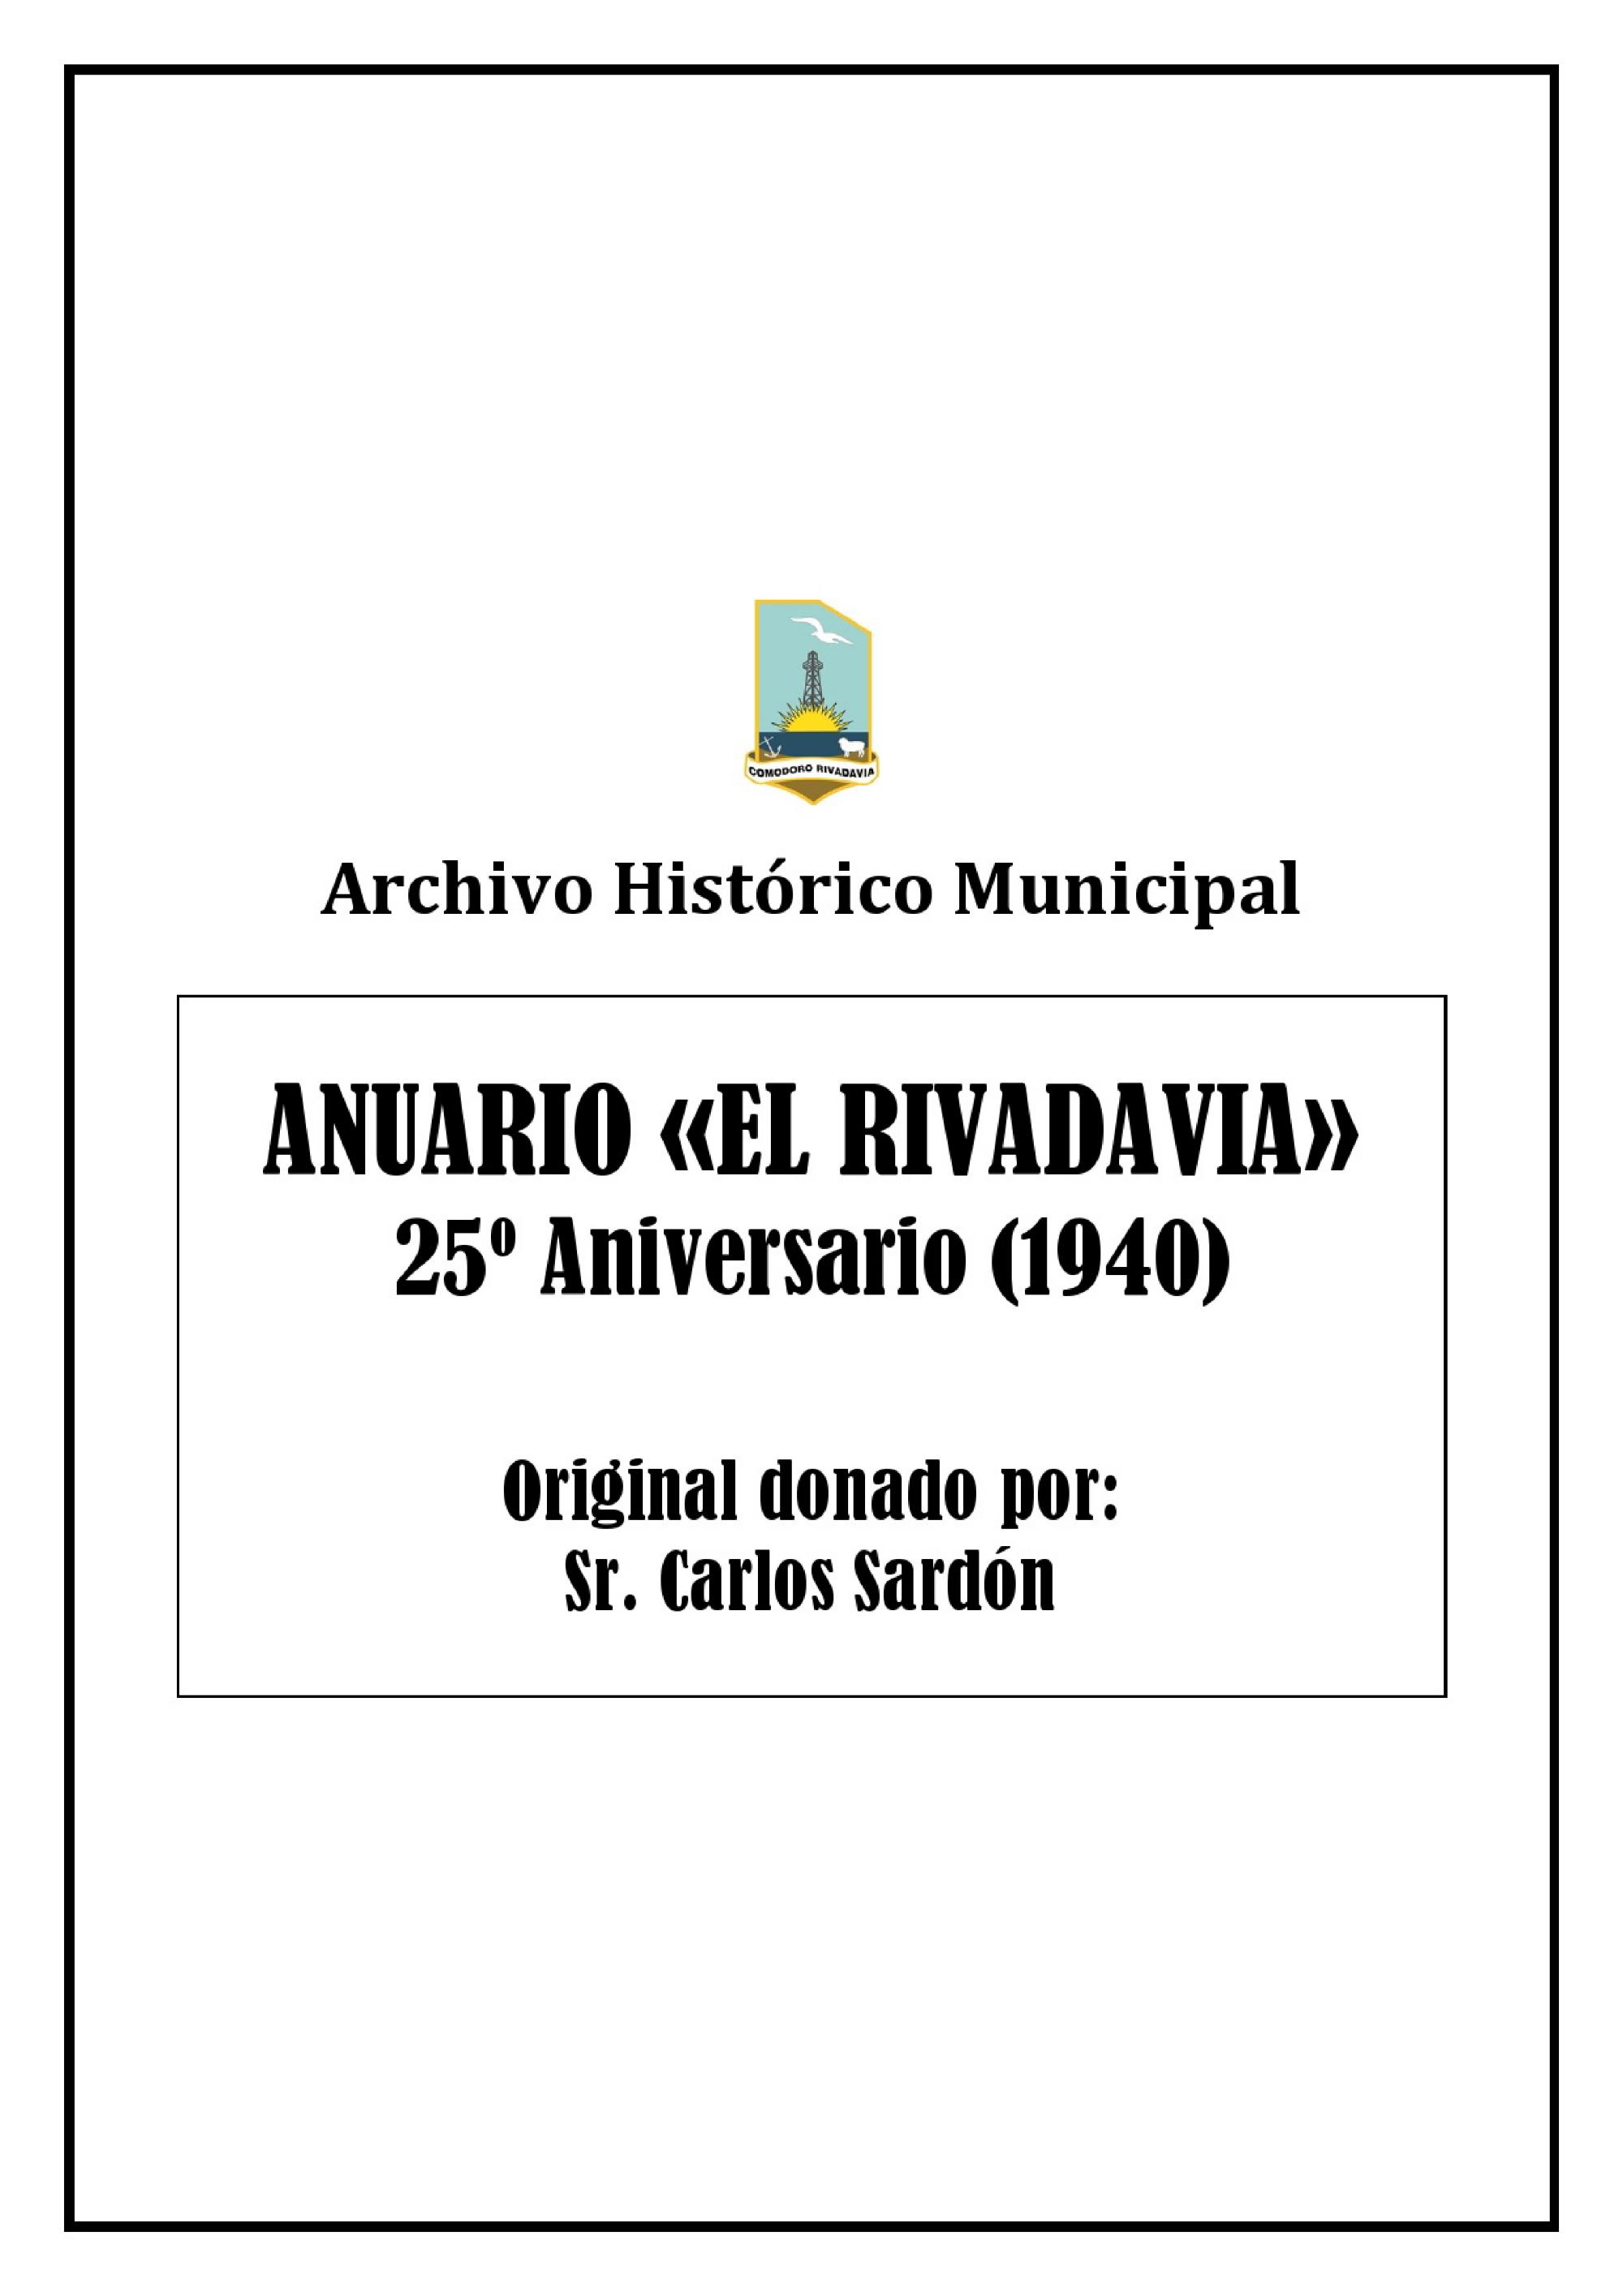 Anuario El Rivadavia